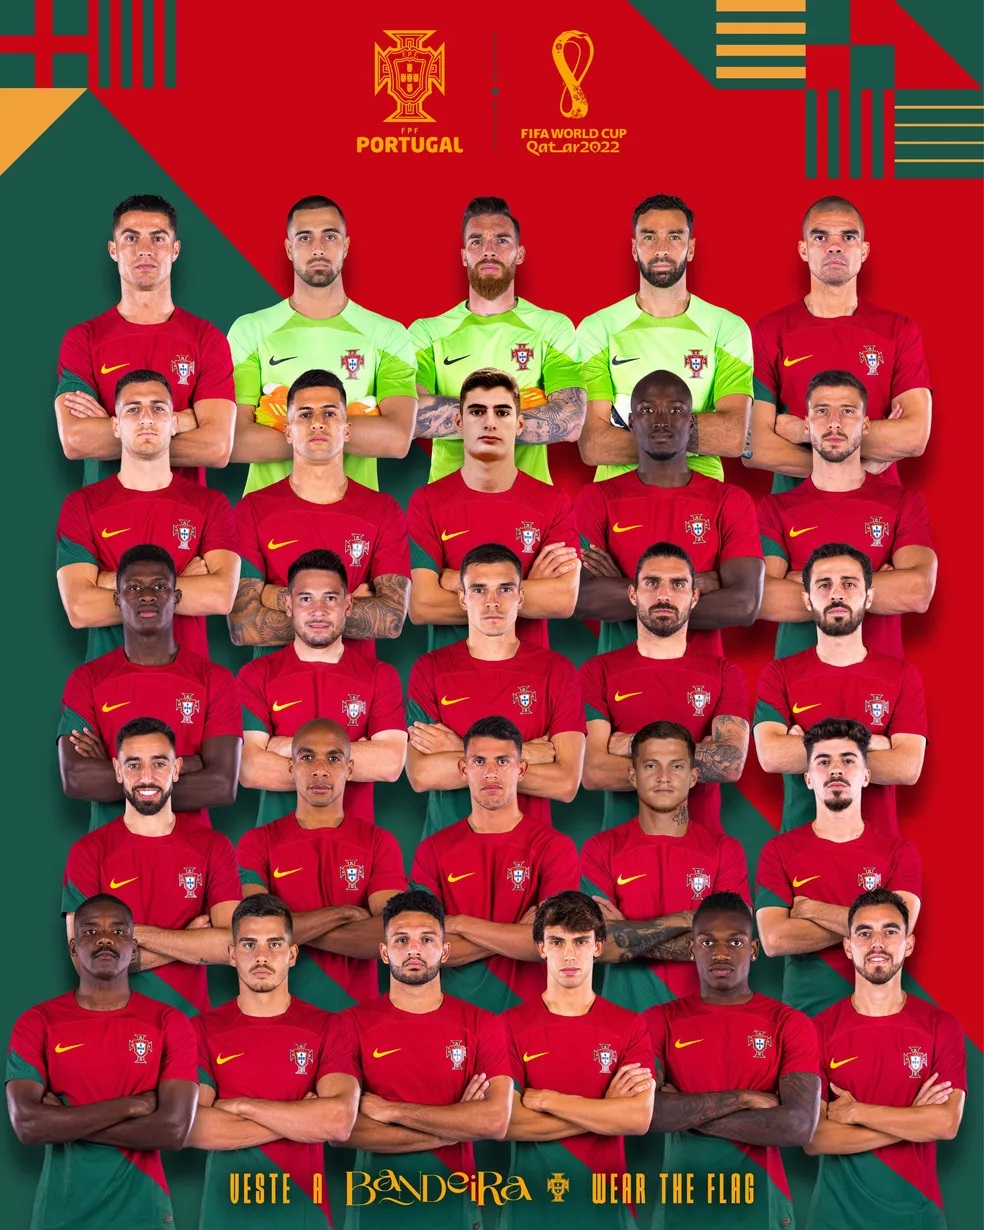 Otávio seleção portuguesa Portugal